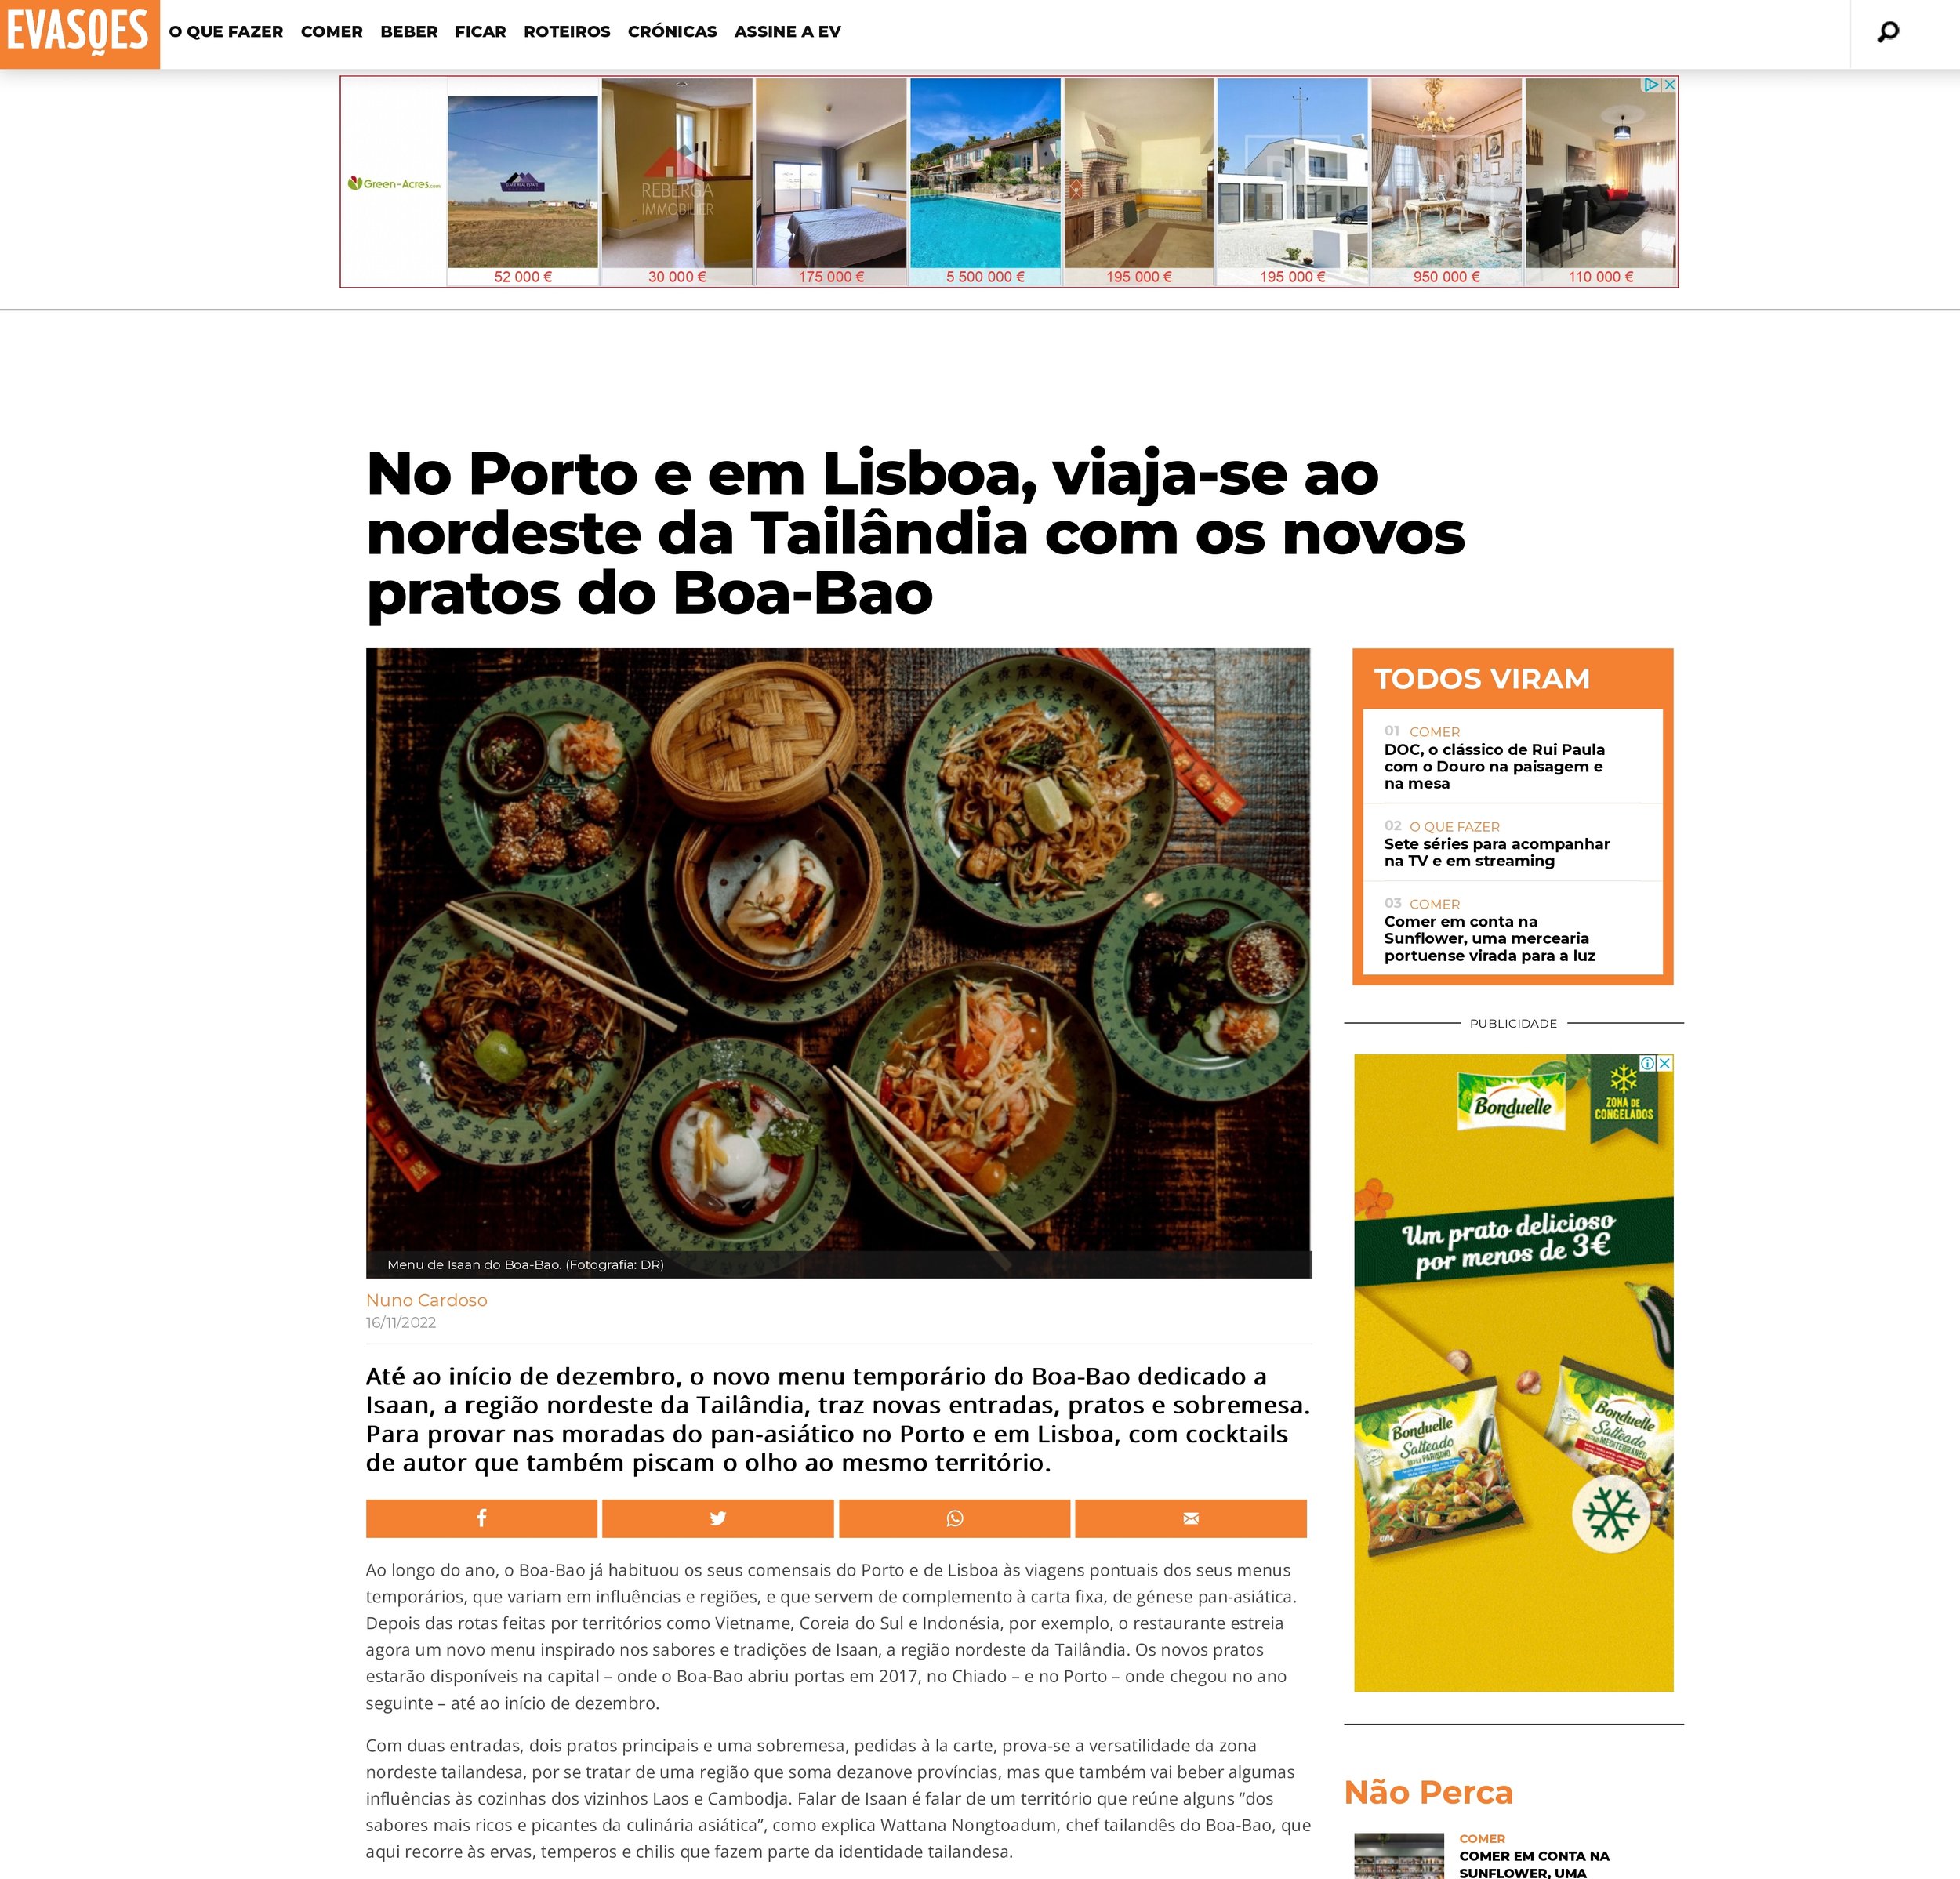 Evasões Online_No Porto e em Lisboa, viaja-se ao nordeste da Tailândia com os novos pratos do Boa-Bao_page-0001.jpg